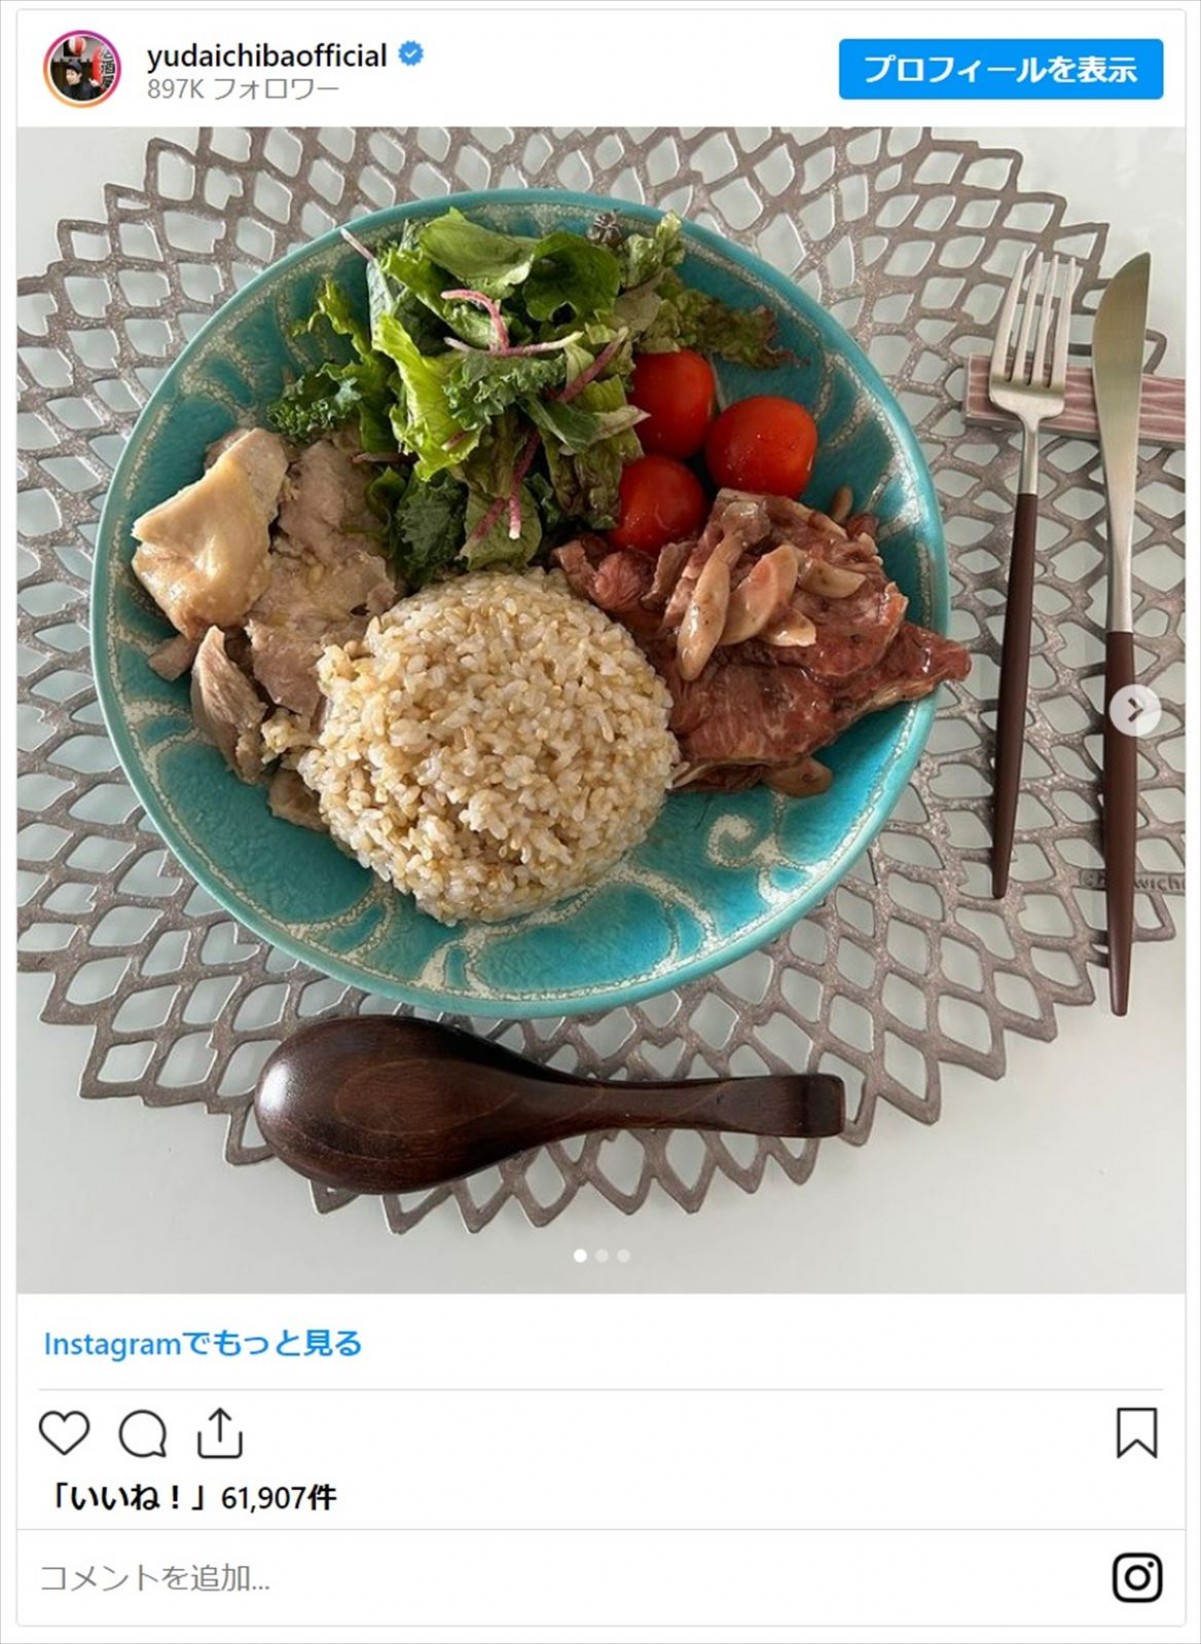 千葉雄大、自作の料理を公開しファン「食事が意識高い」「センスが素敵ですね」